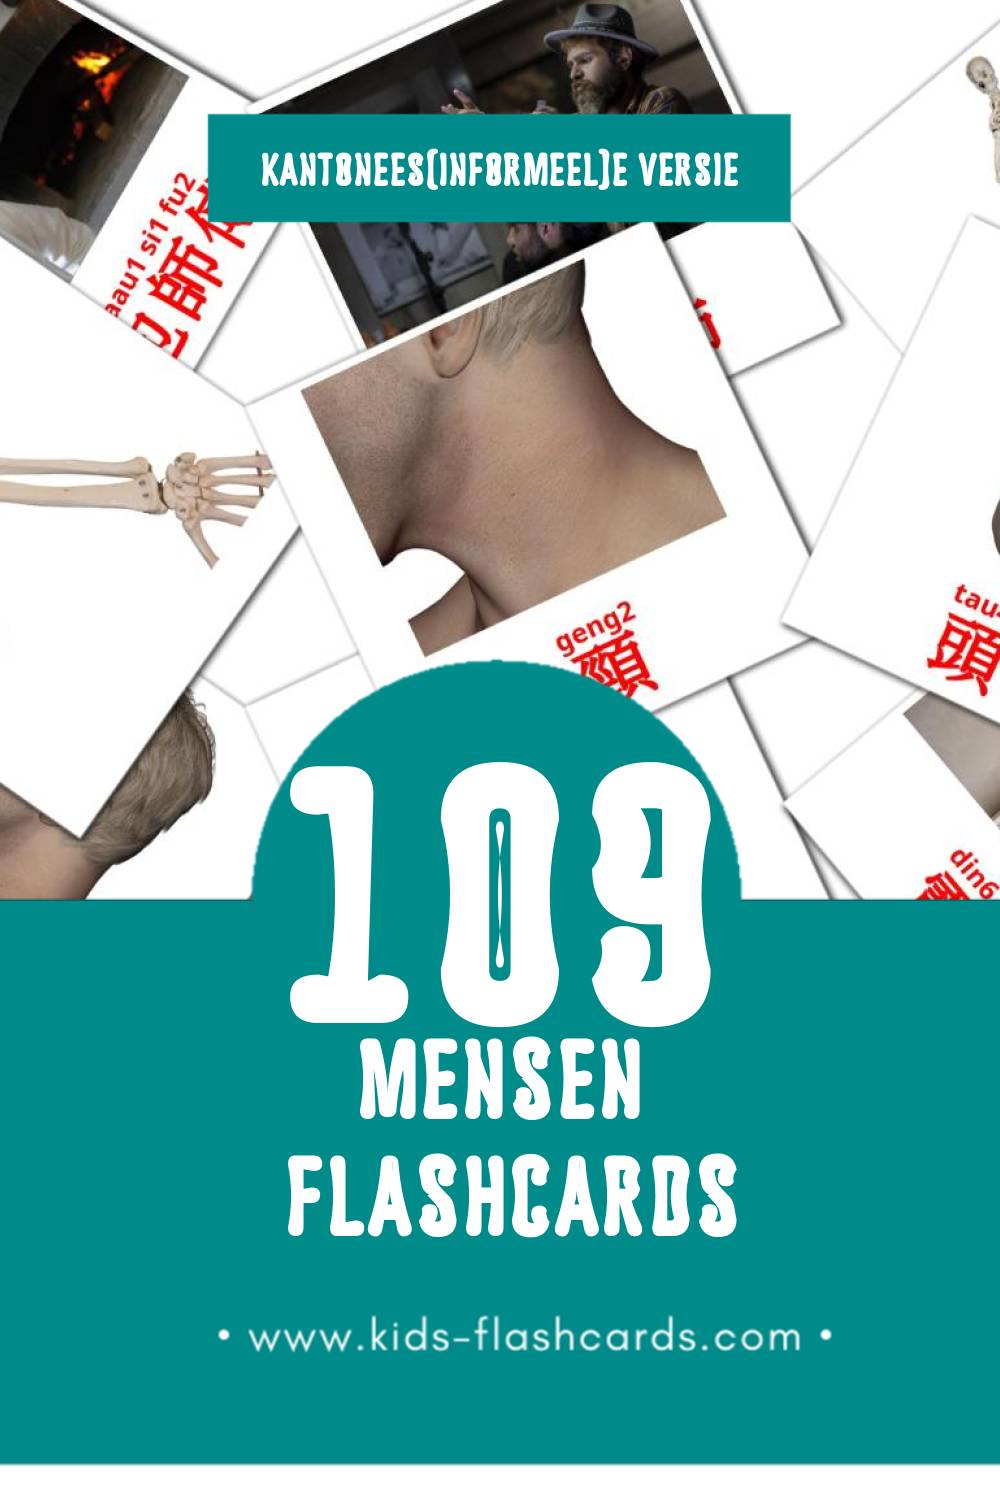 Visuele 人(jan4) Flashcards voor Kleuters (89 kaarten in het Kantonees(informeel))